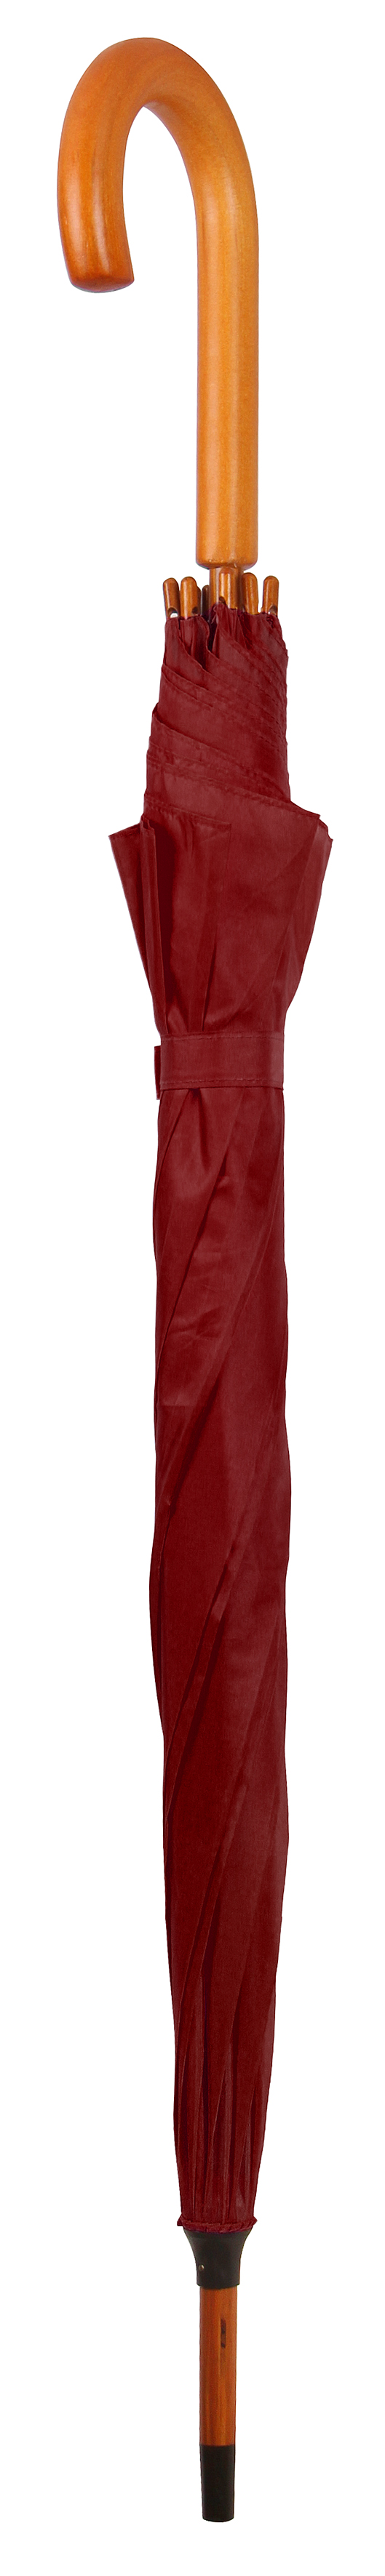 Зонт-трость Bergamo Toprain, бордовый (4513102) - фото 2